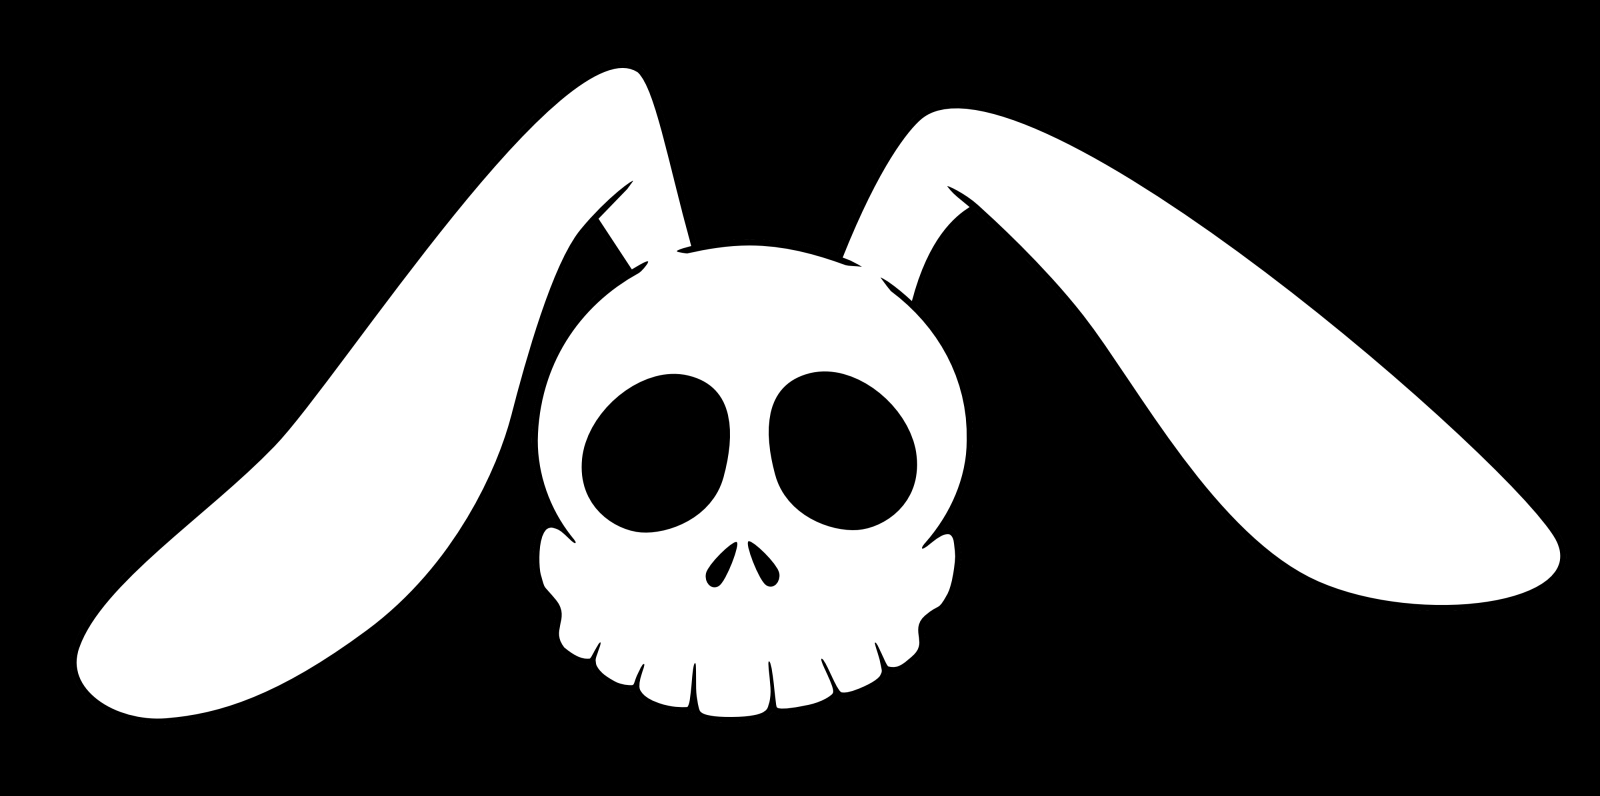 Rabbit Skull Logo - Rabbit Skull Vector